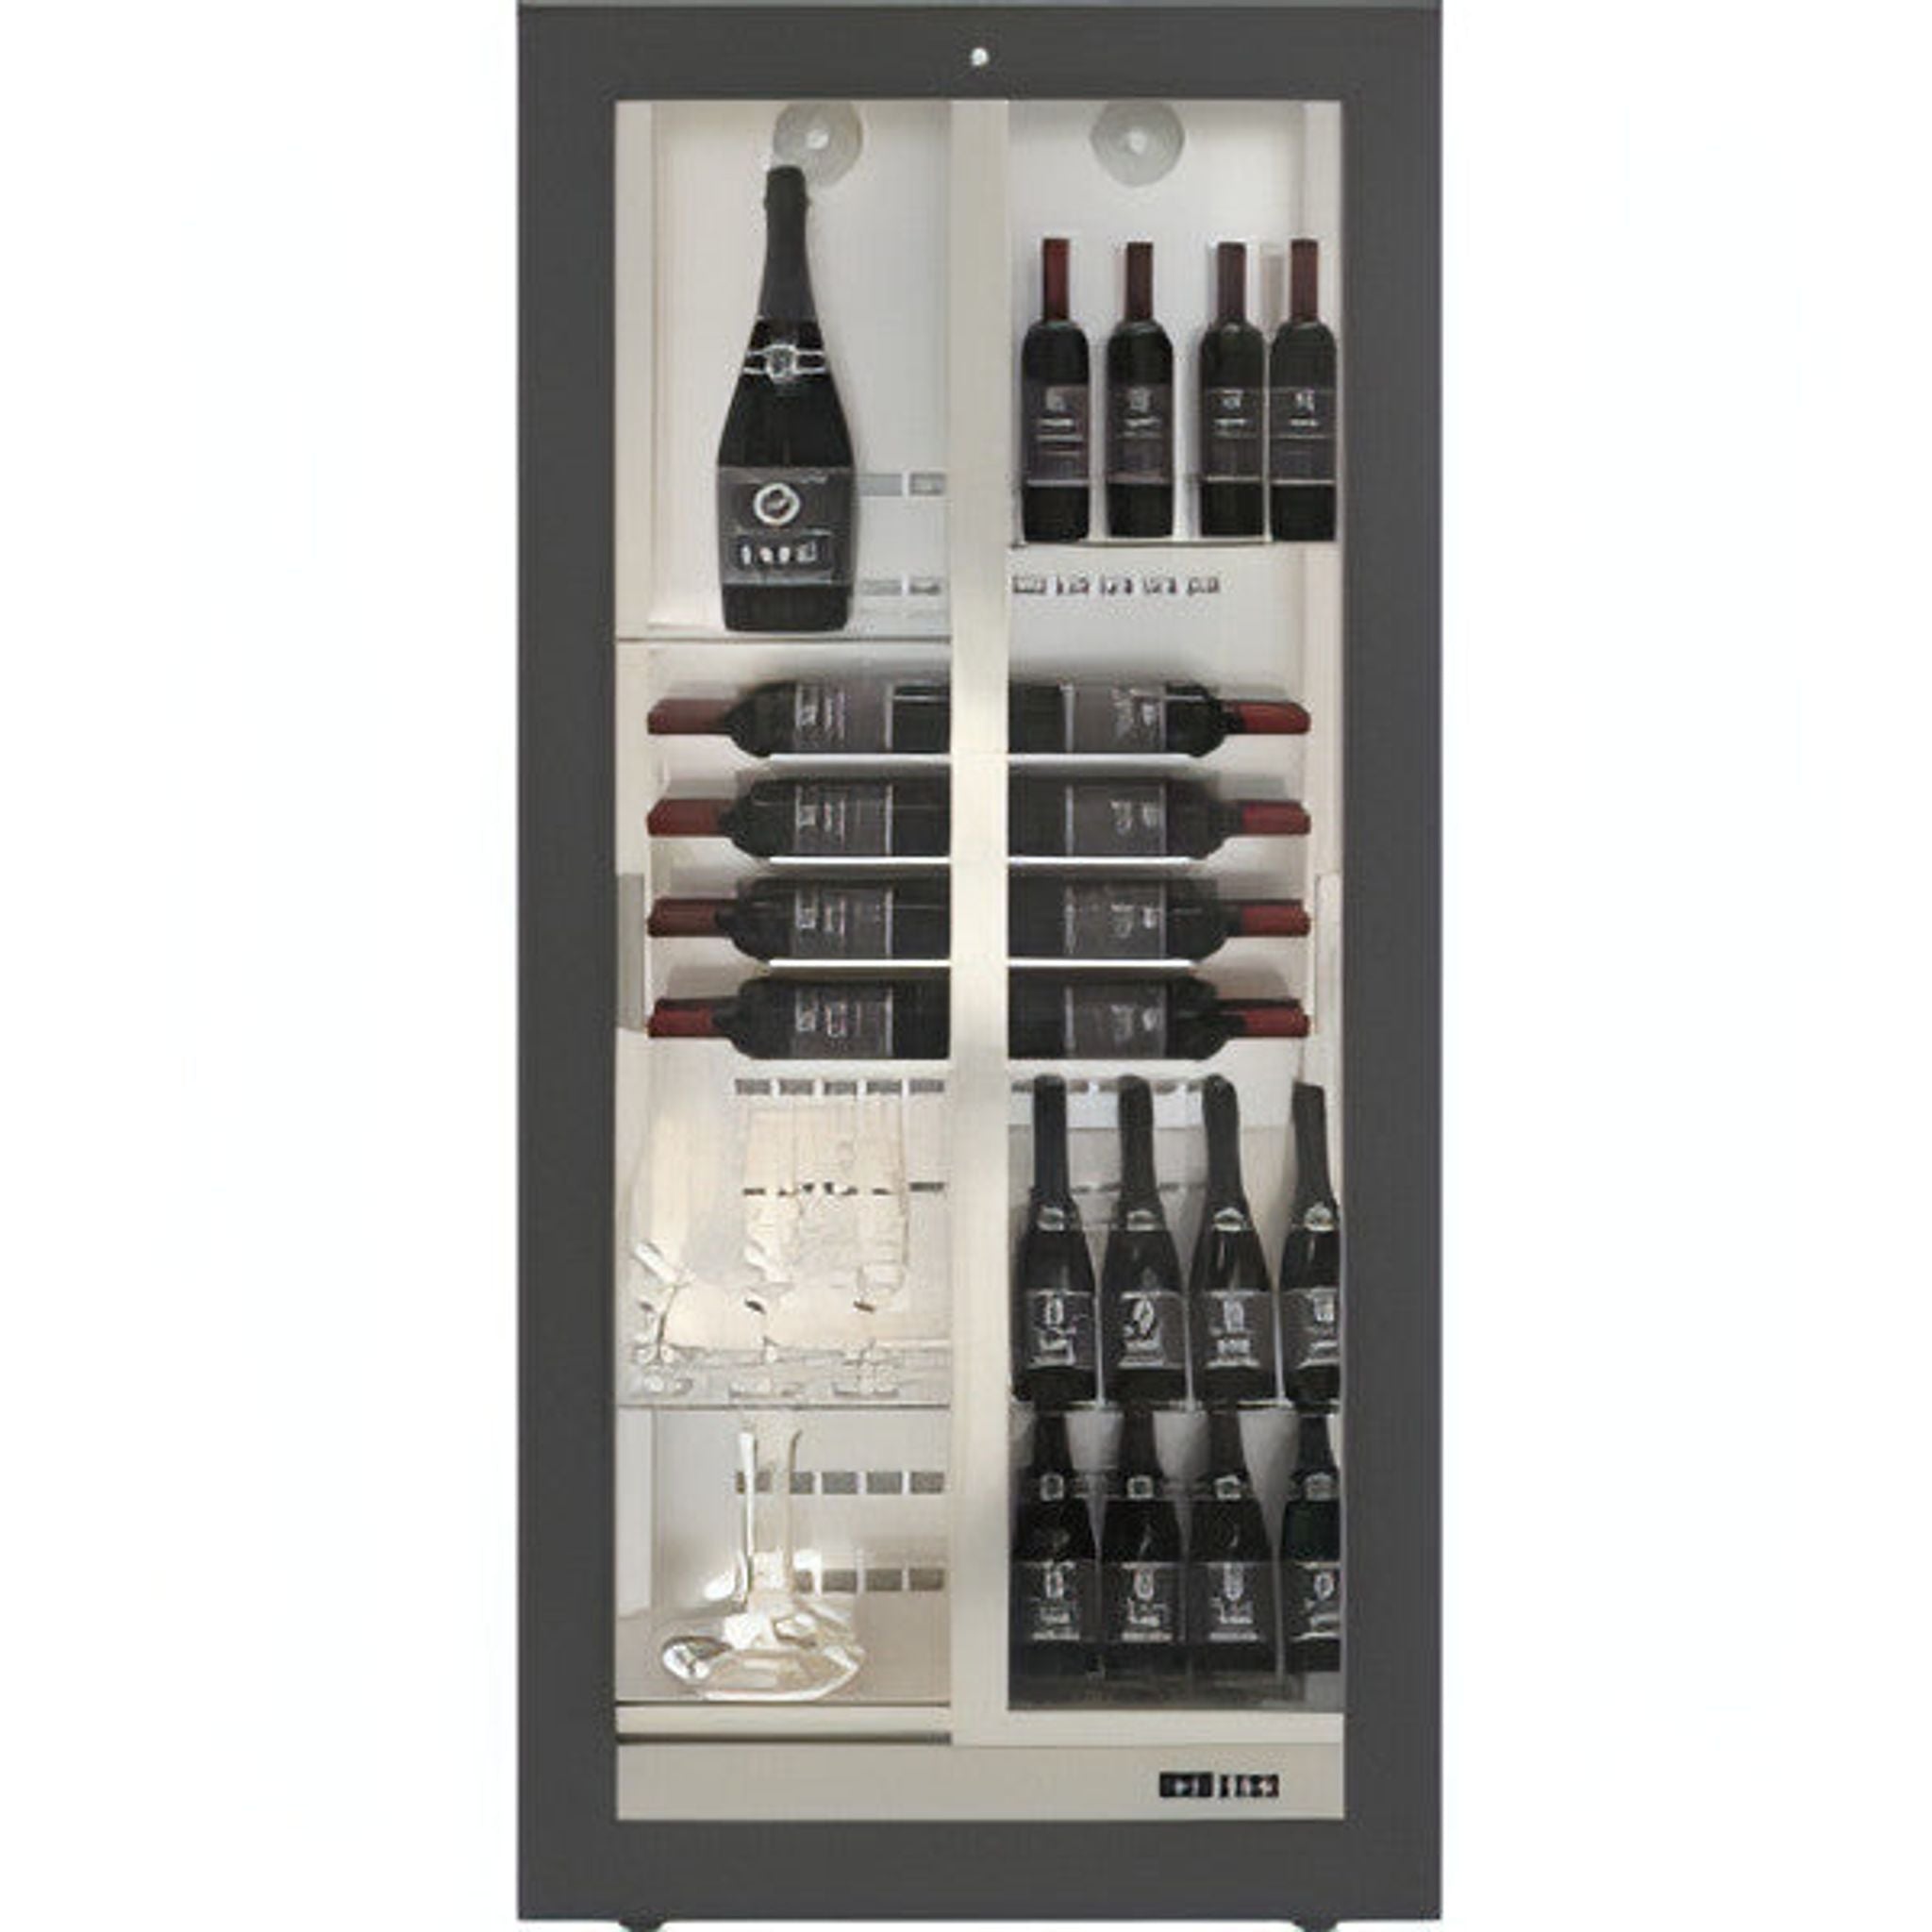 Teca Vino - Built in Wine Wall TBV14 - Customisable Shelving - For Restaurant Use